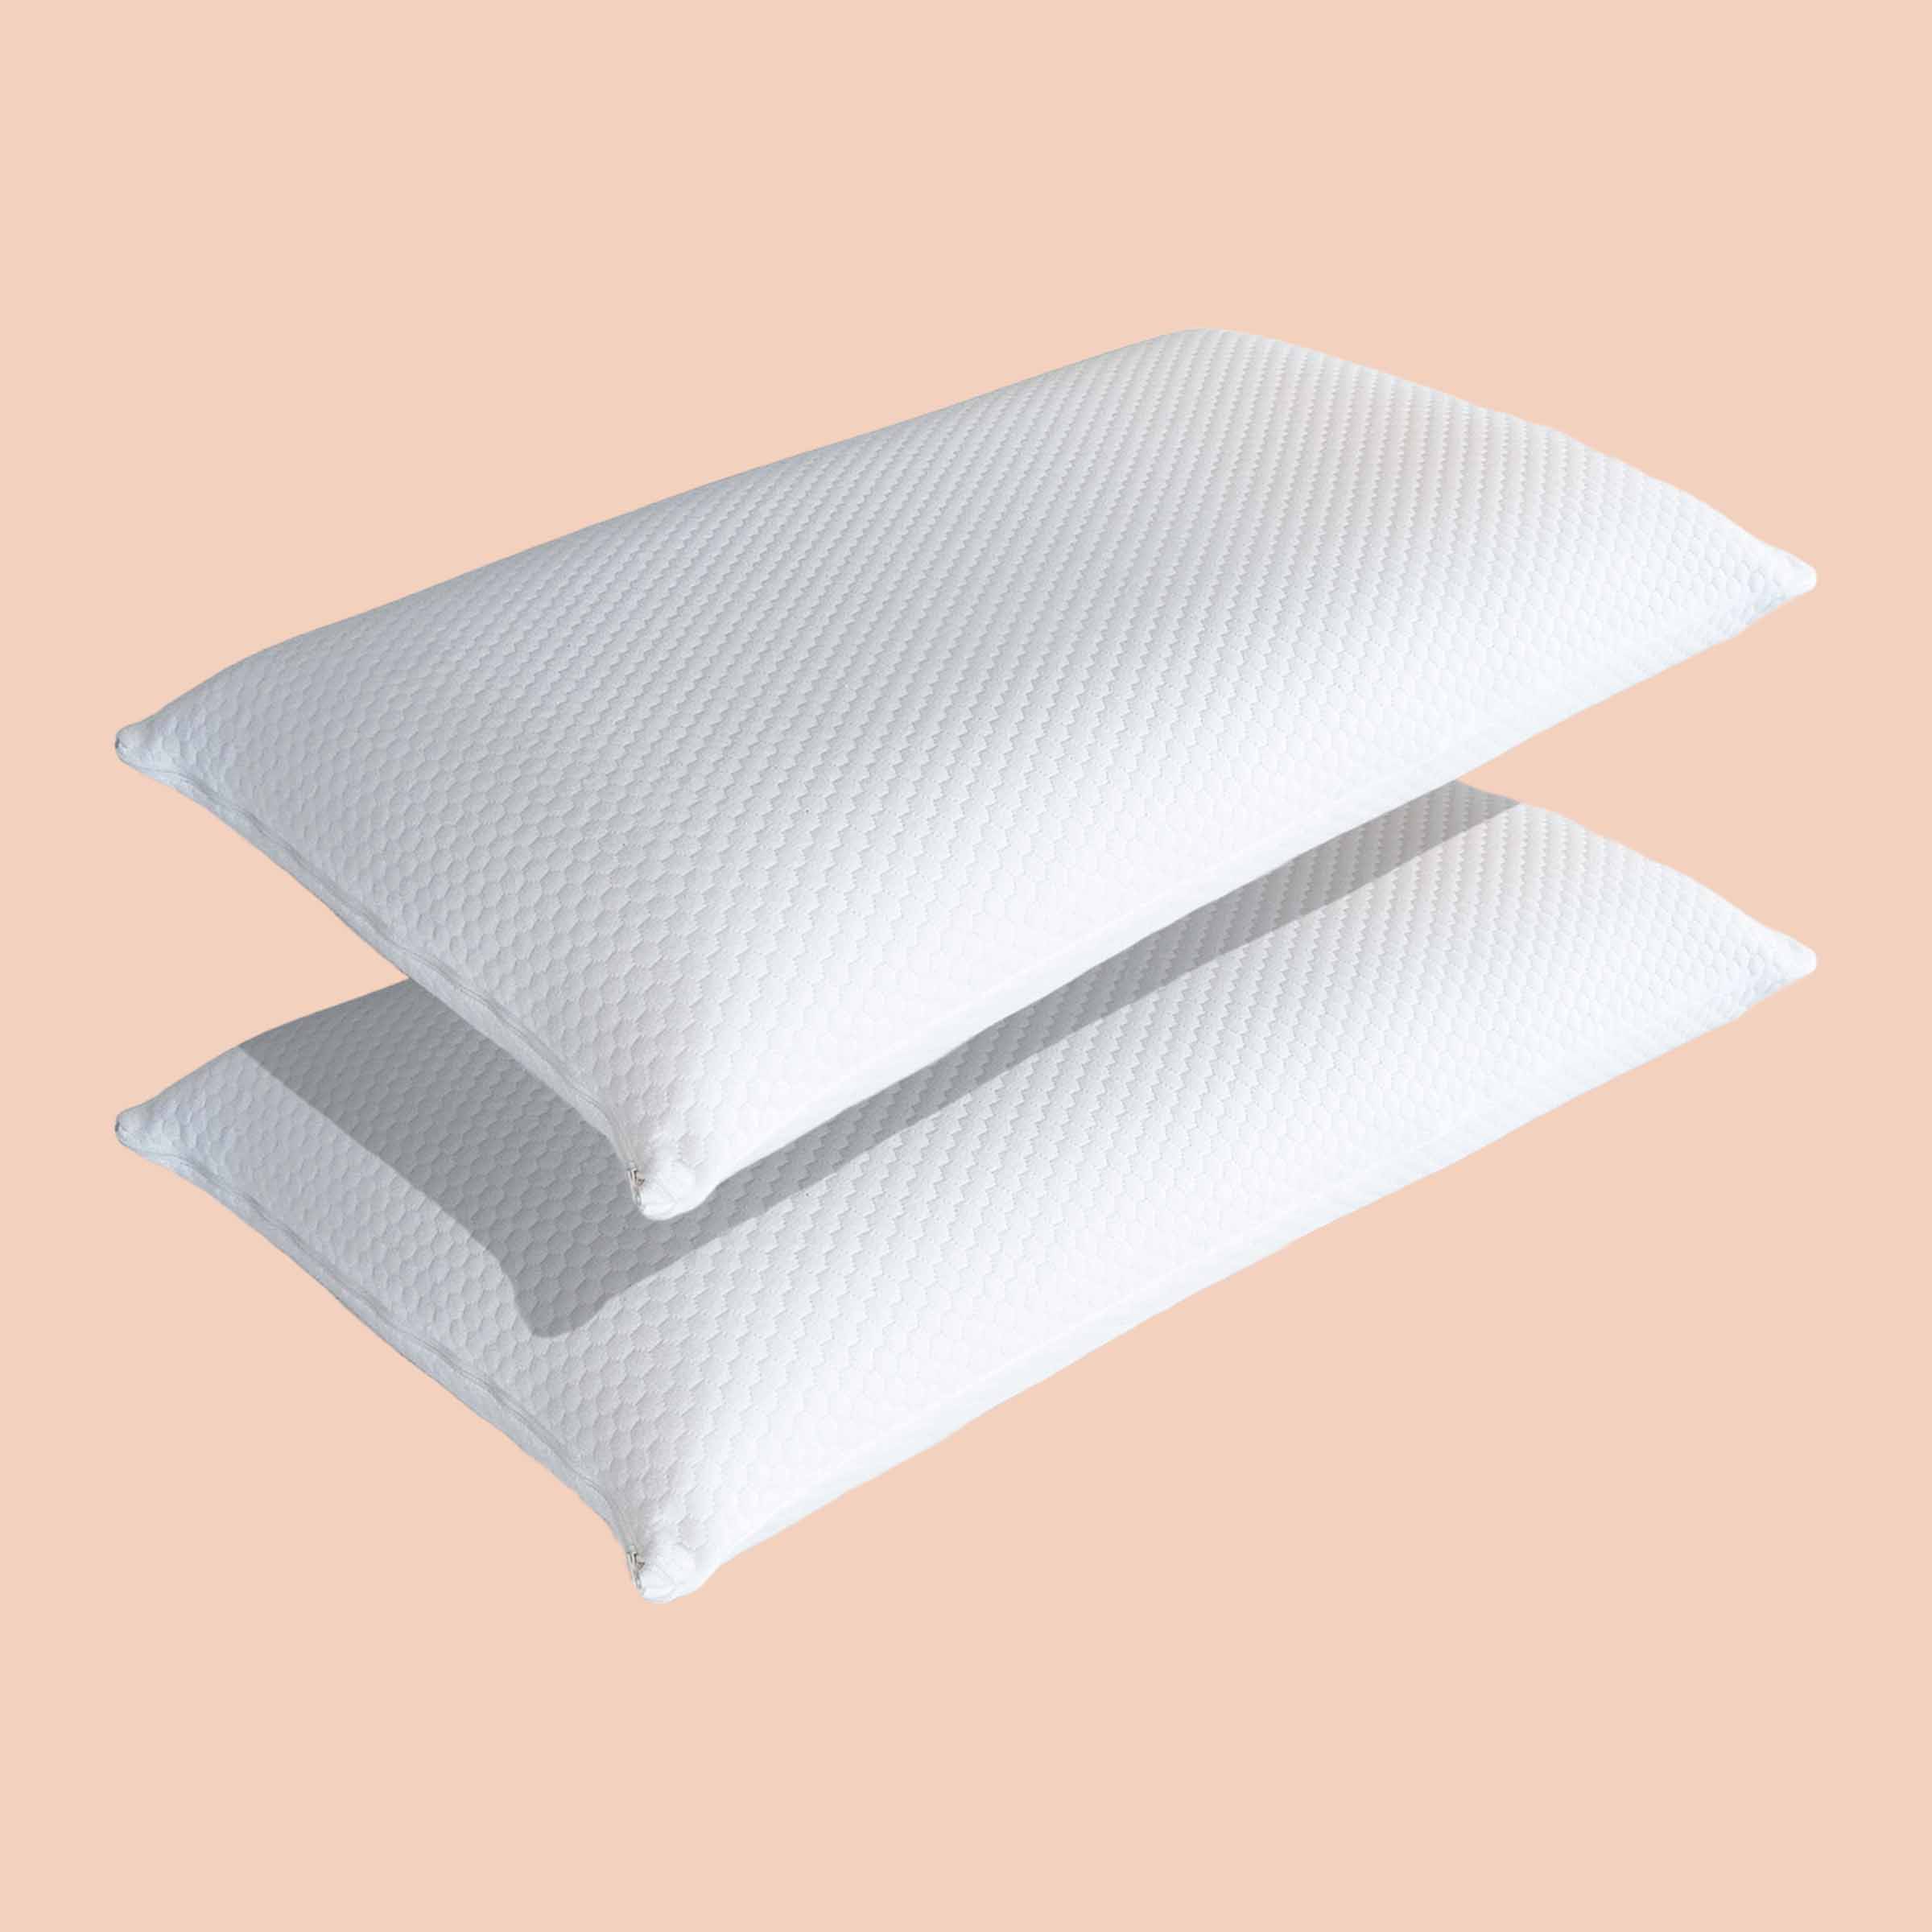 Due cuscini Fiordilattice di Beliamo in un bundle, progettati per offrire supporto e comfort naturali durante il sonno